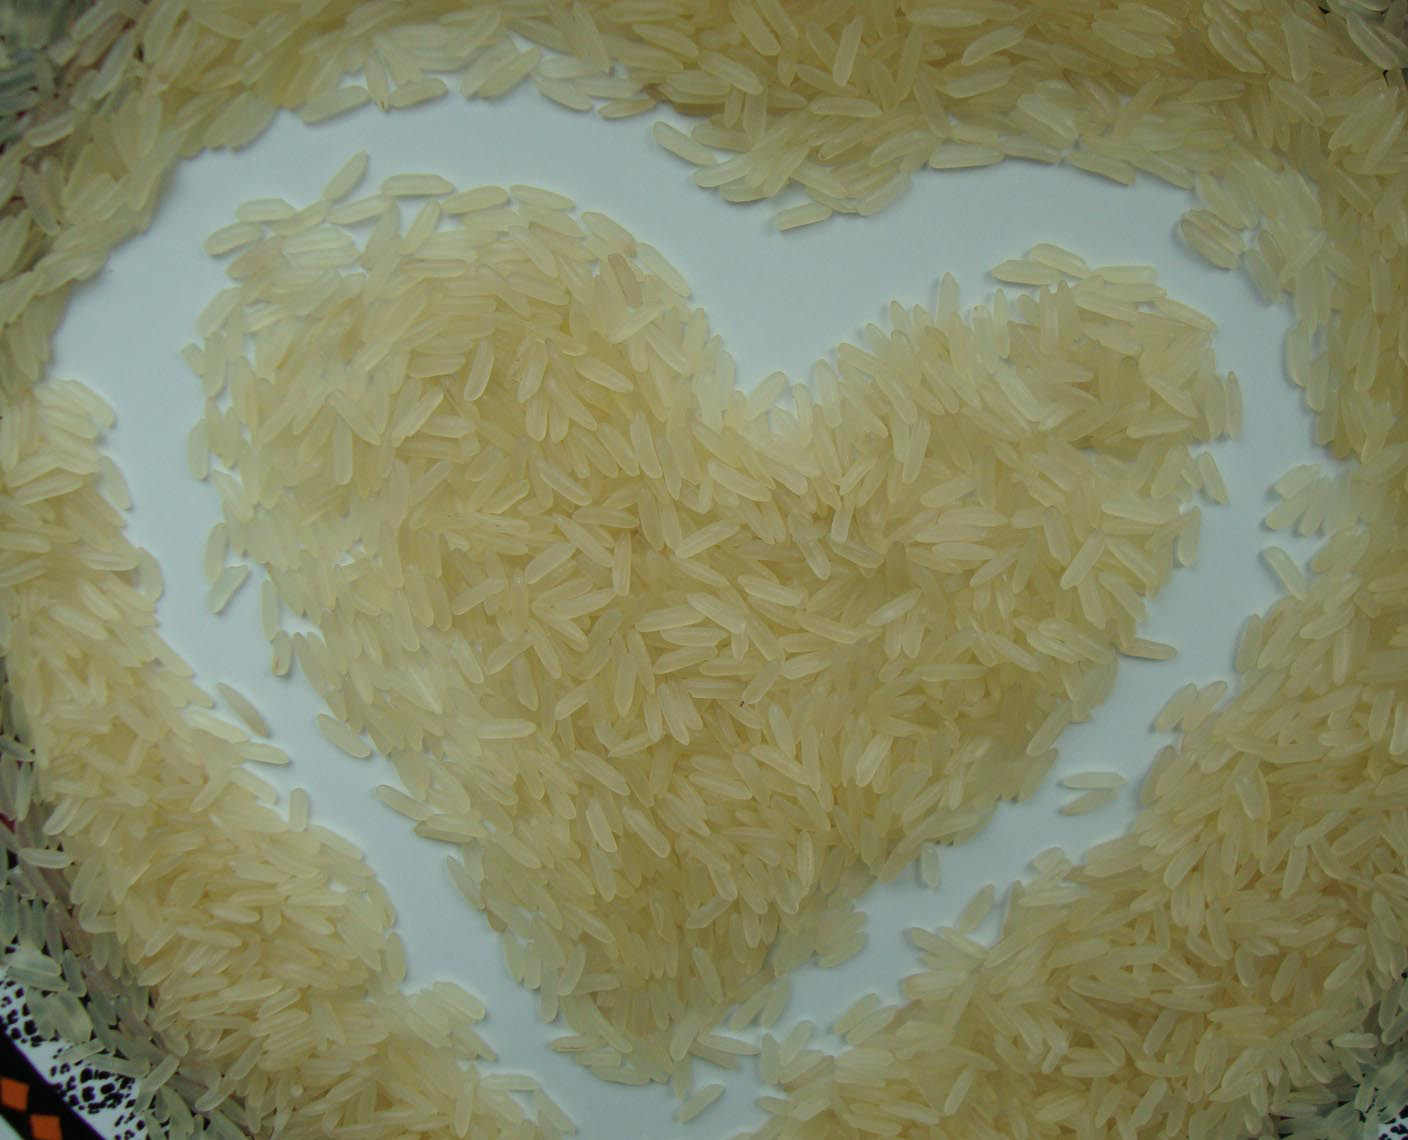 kolik vařit rýži